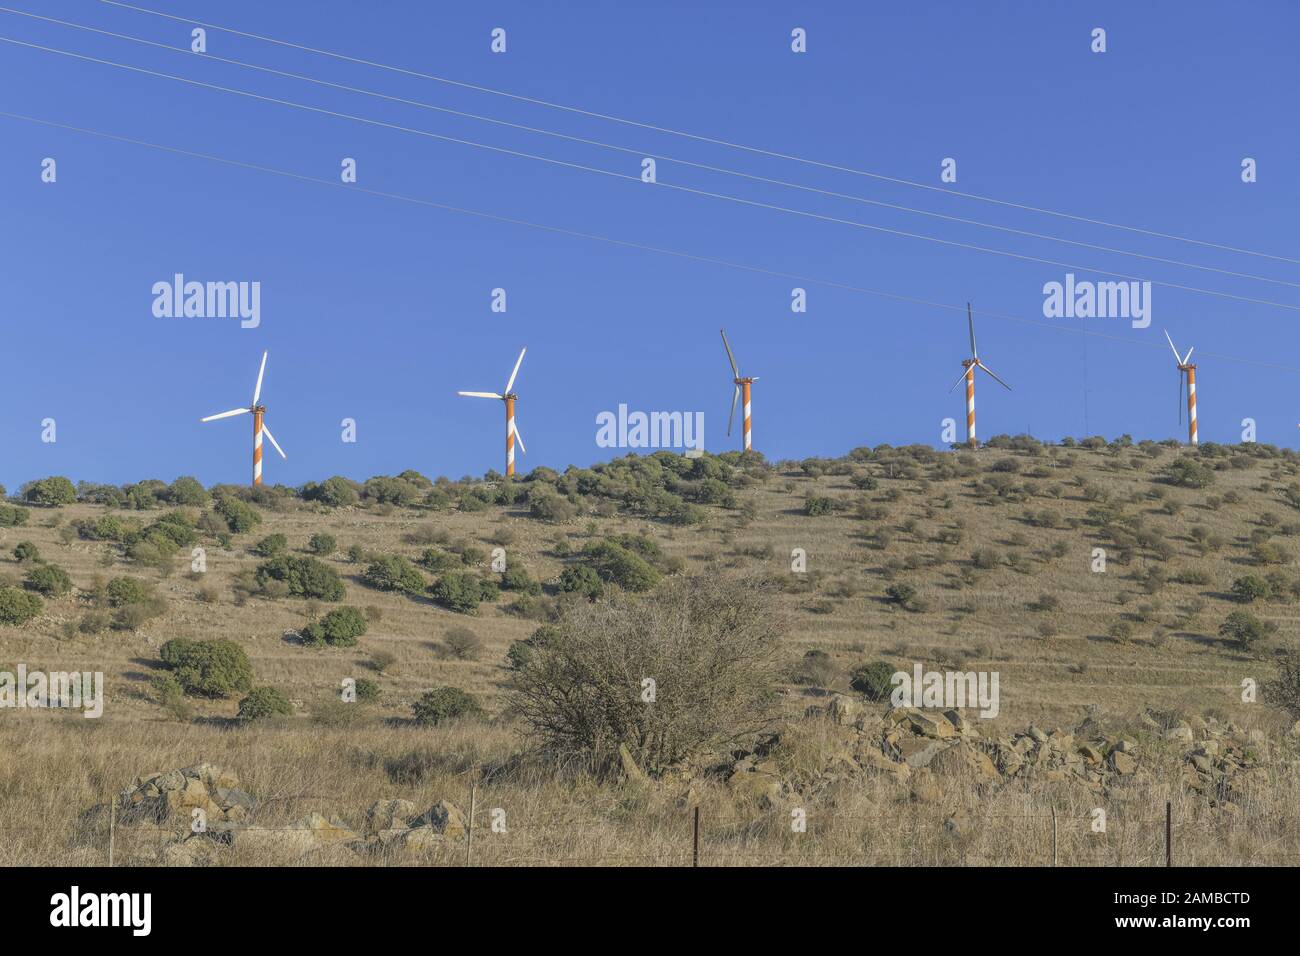 Windräder, Golanhöhen, Israel Foto de stock